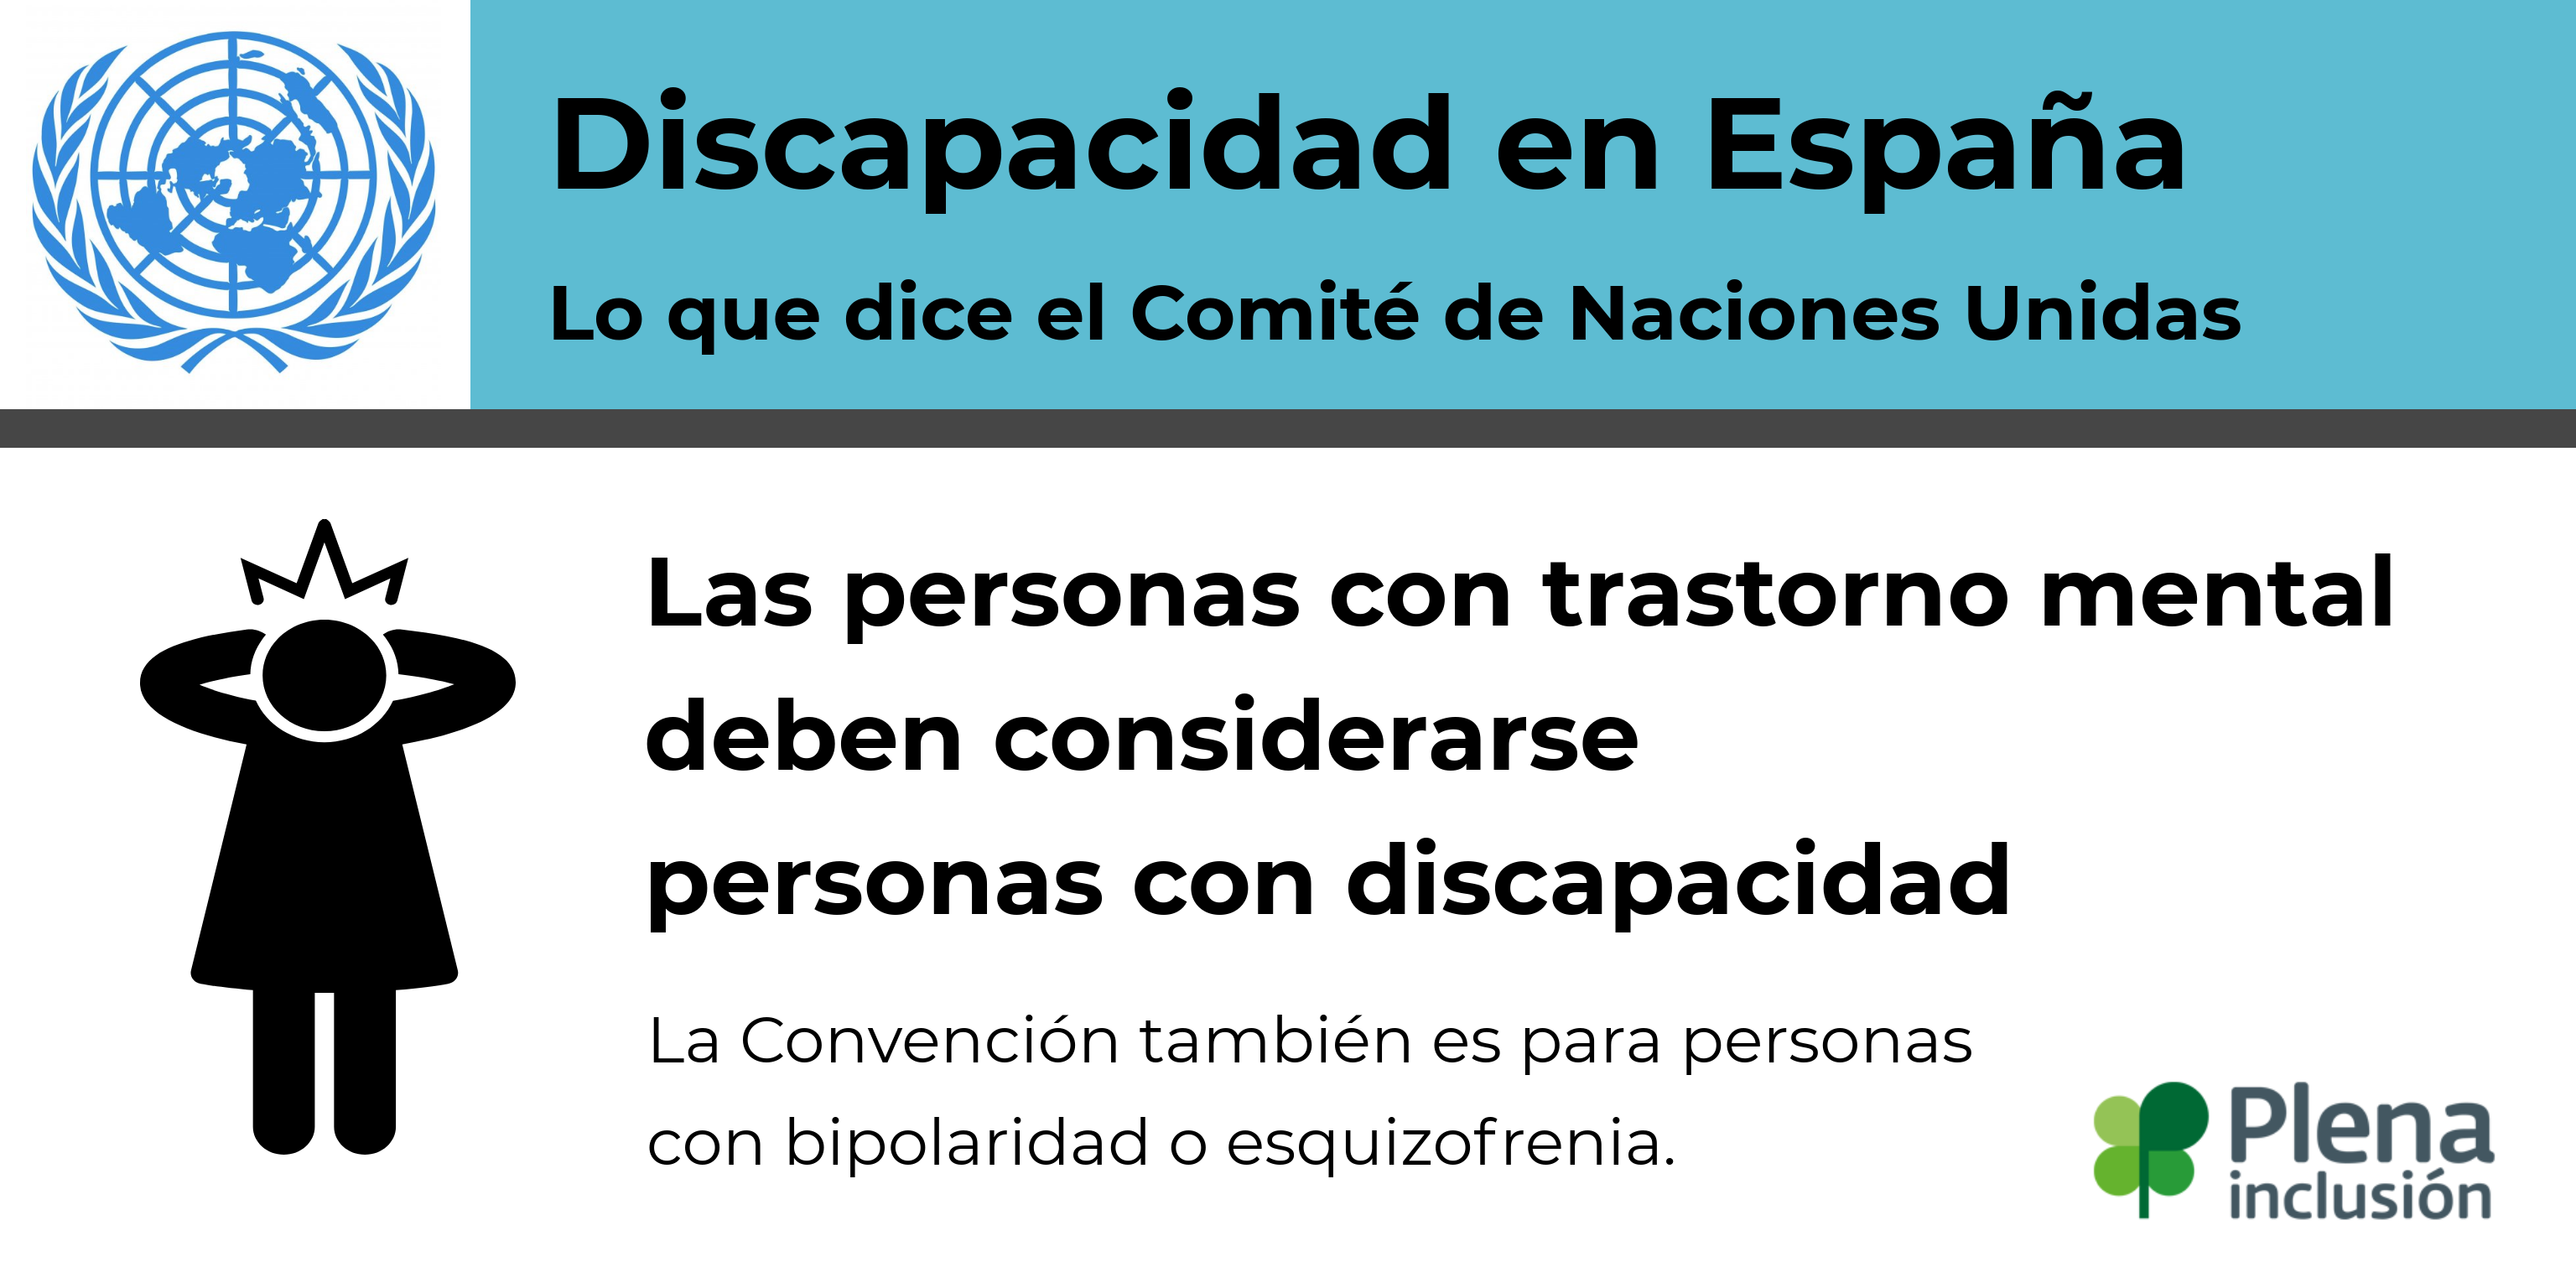 Discapacidad en España. Las personas con trastorno mental deben considerarse personas con discapacidad